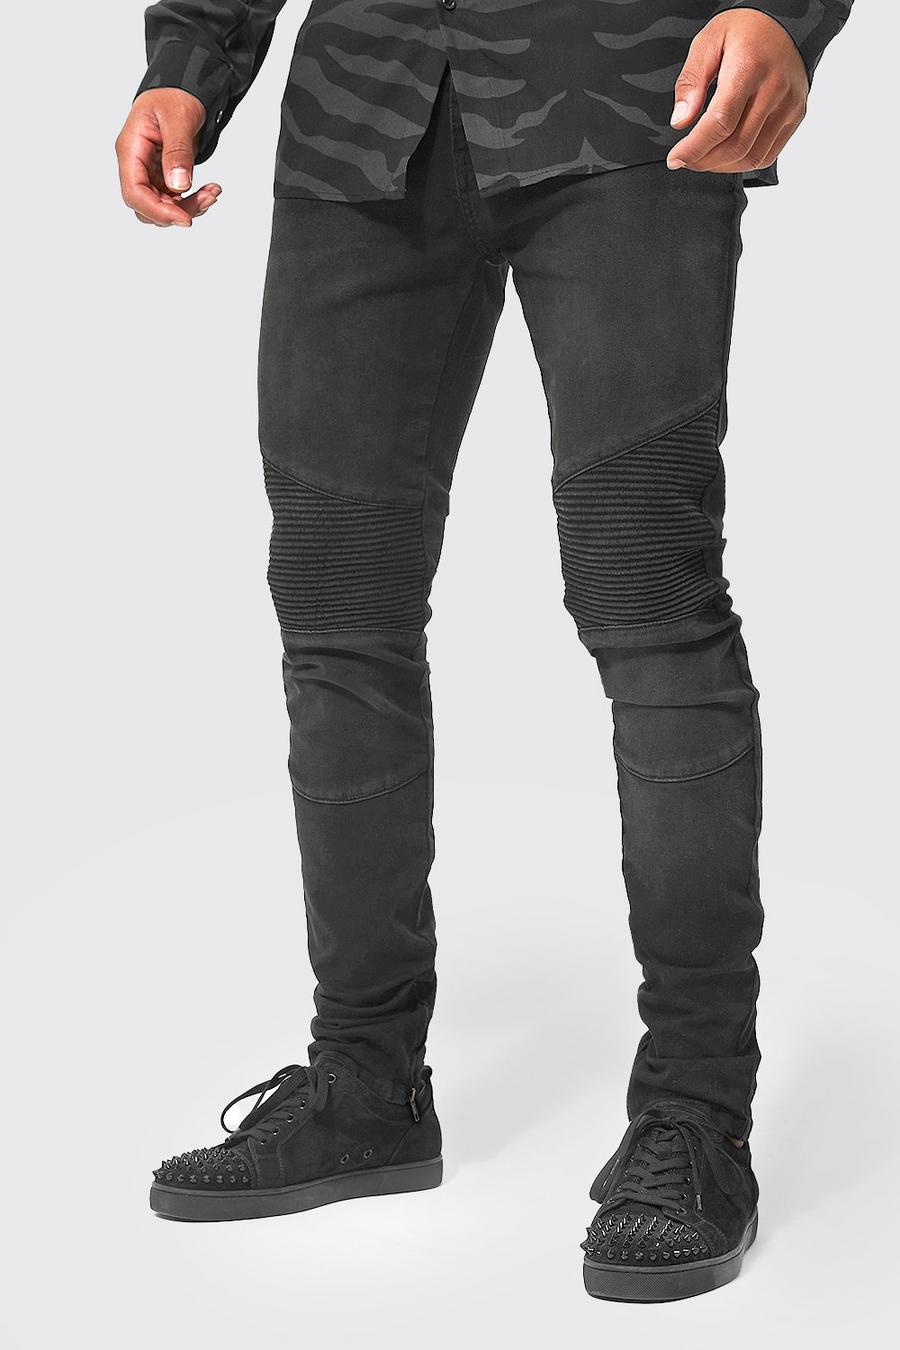 Jeans Tall Skinny Fit stile Biker con zip sul fondo, Black negro